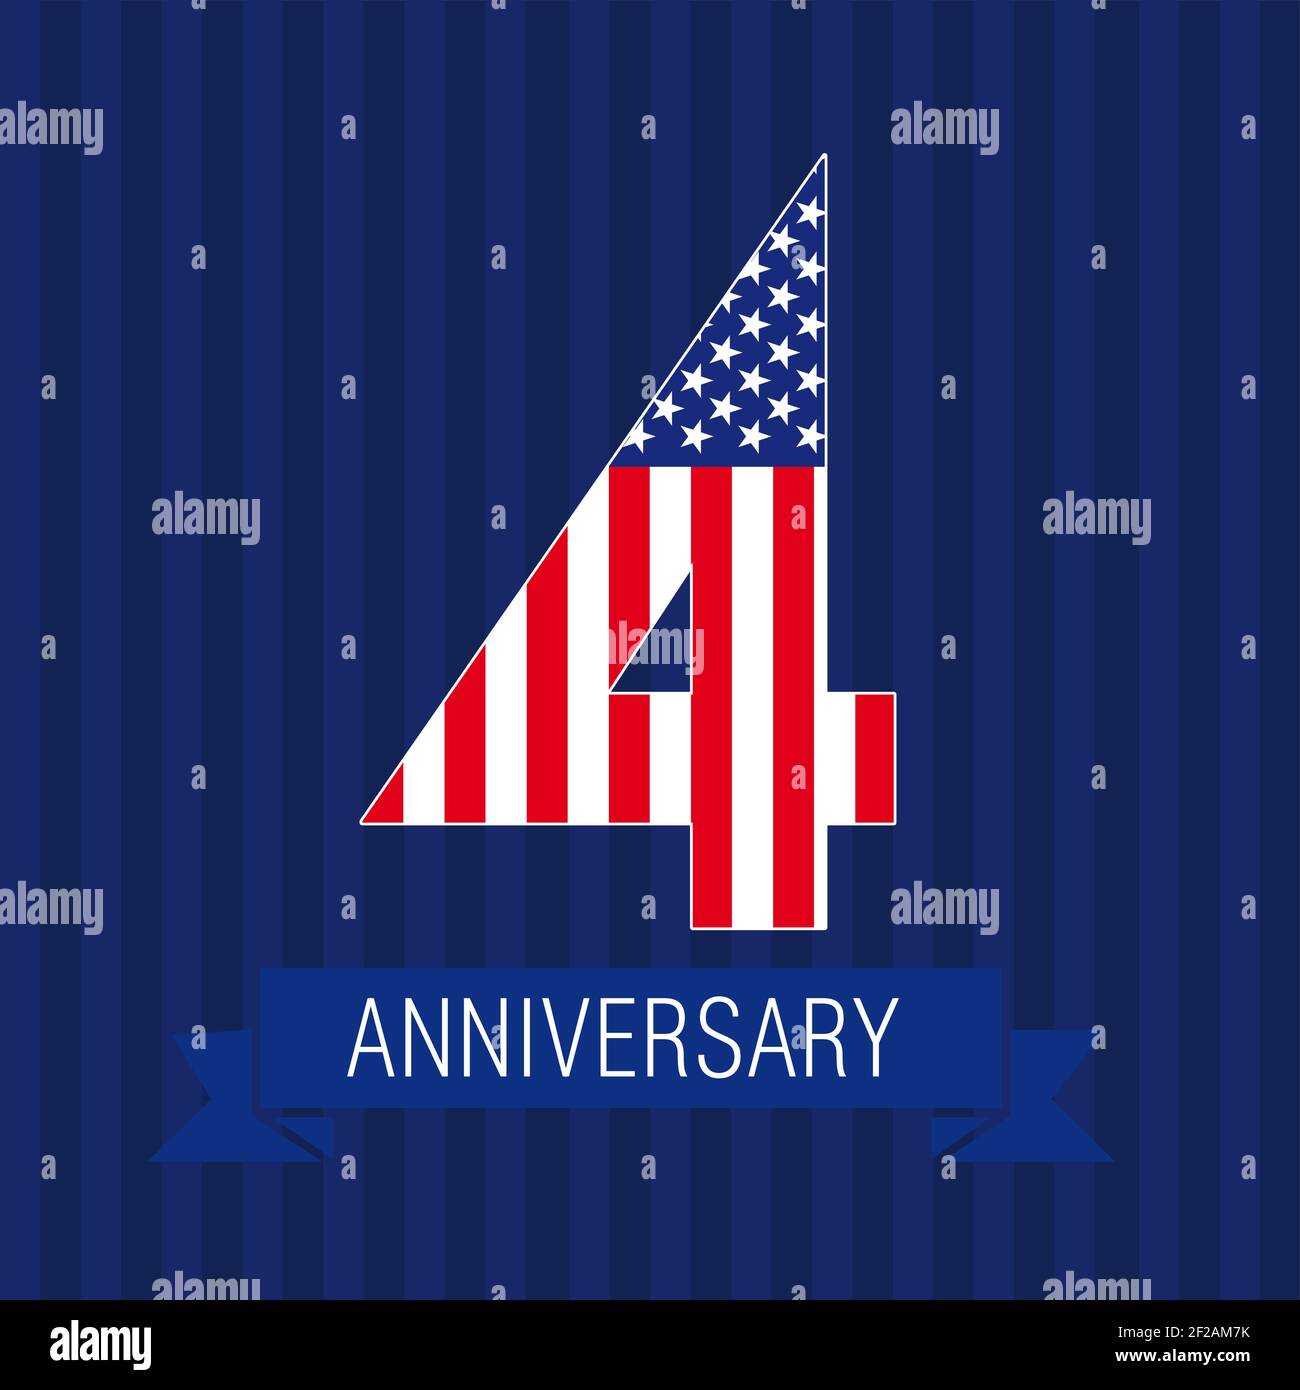 Anniversary 4 US-Flag-Logo. Vorlage der Ikone der Feier des 4. Platzes als amerikanische Flagge. USA-Nummern im traditionellen Stil auf gestreiftem abstrakten blauen Bac Stock Vektor